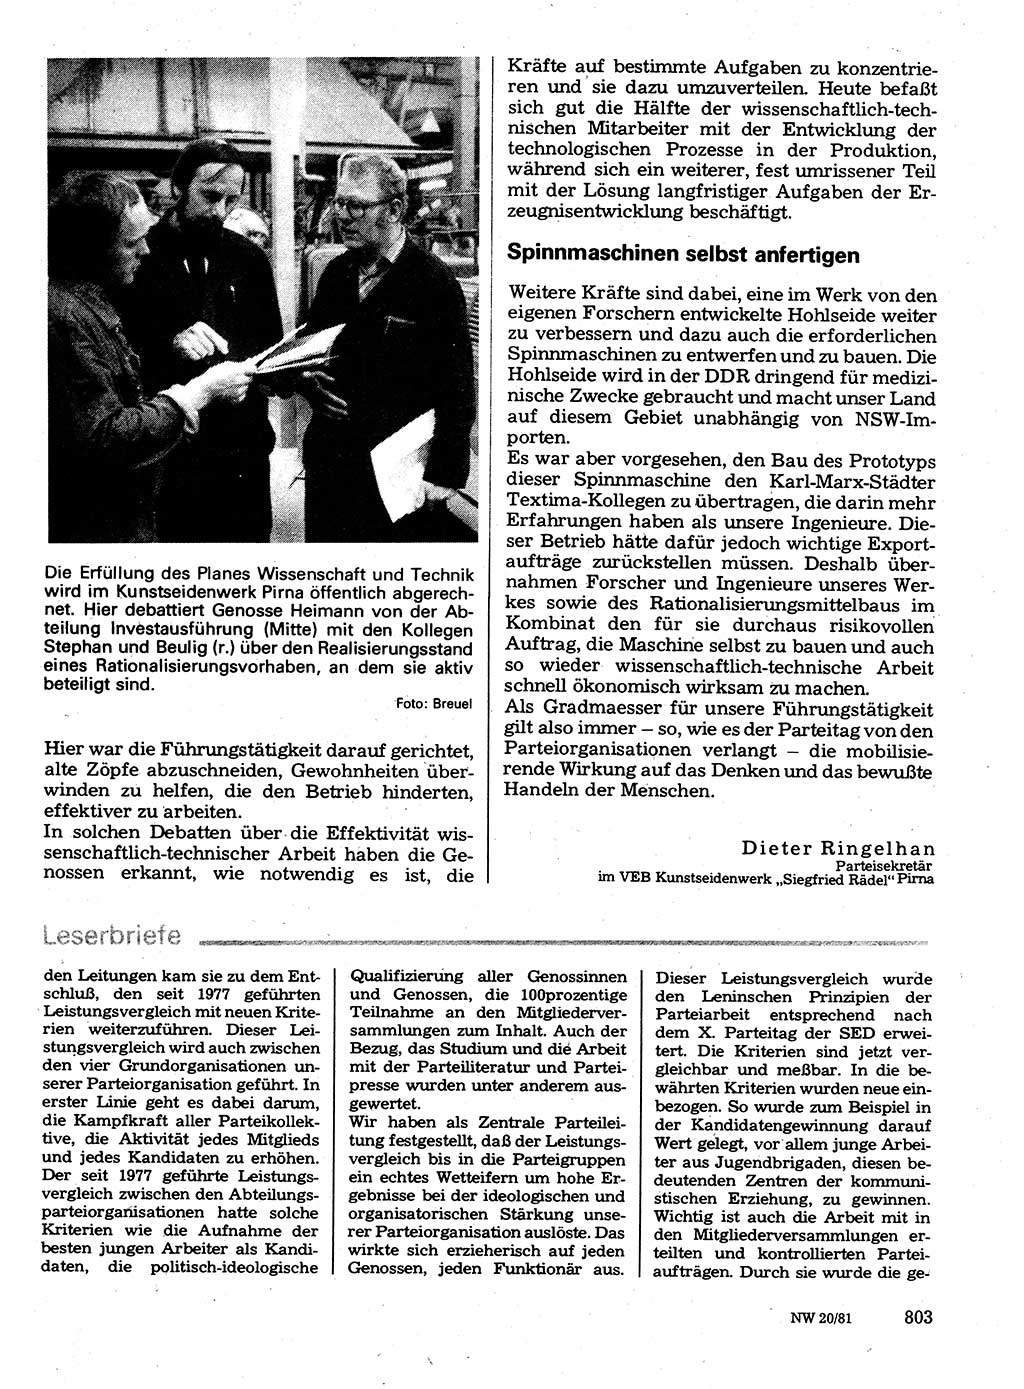 Neuer Weg (NW), Organ des Zentralkomitees (ZK) der SED (Sozialistische Einheitspartei Deutschlands) für Fragen des Parteilebens, 36. Jahrgang [Deutsche Demokratische Republik (DDR)] 1981, Seite 803 (NW ZK SED DDR 1981, S. 803)